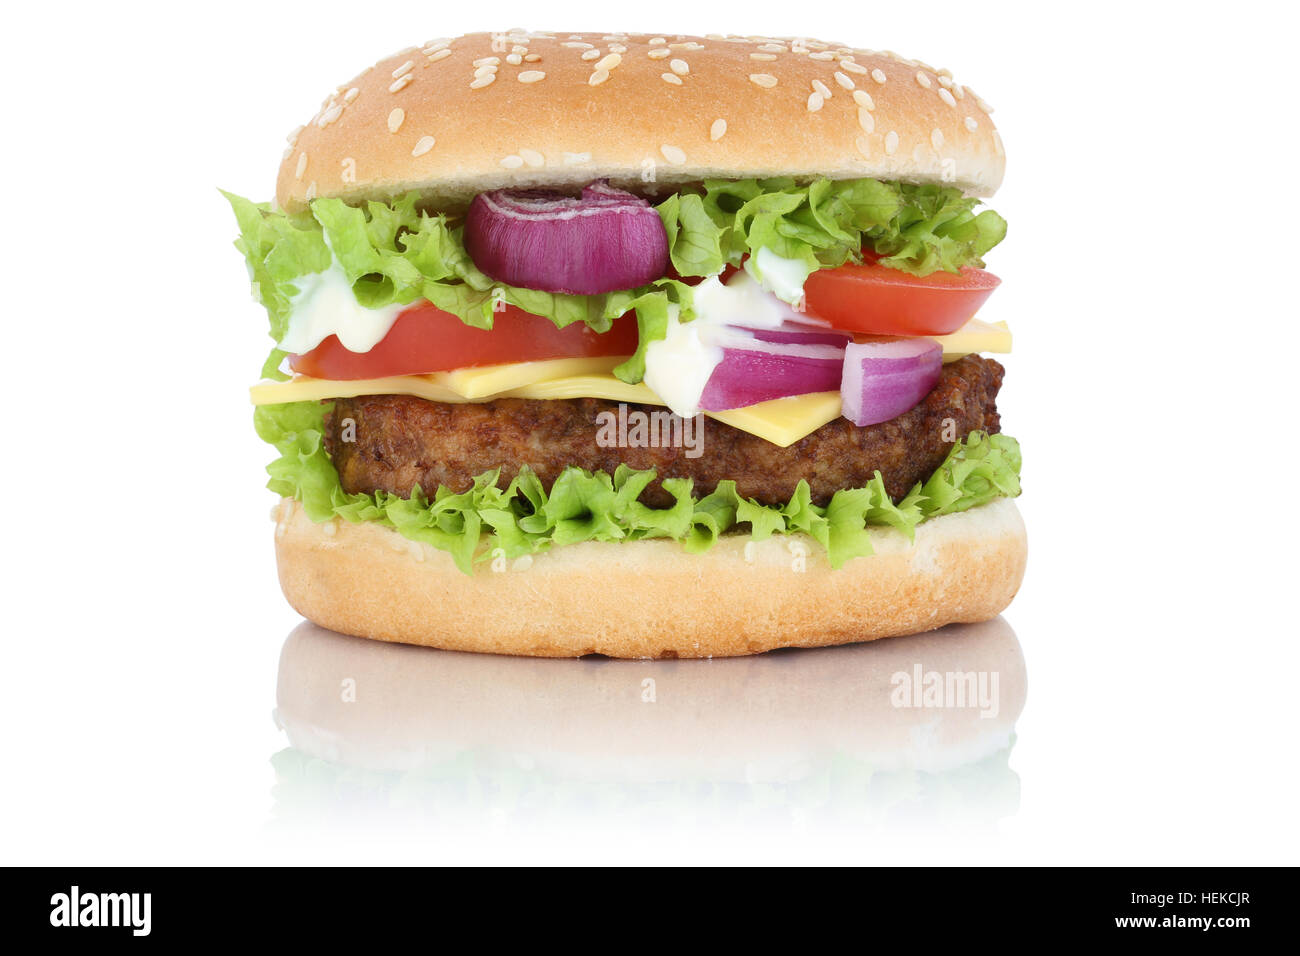 Cheeseburger hamburger formaggio di lattuga isolato su uno sfondo bianco Foto Stock